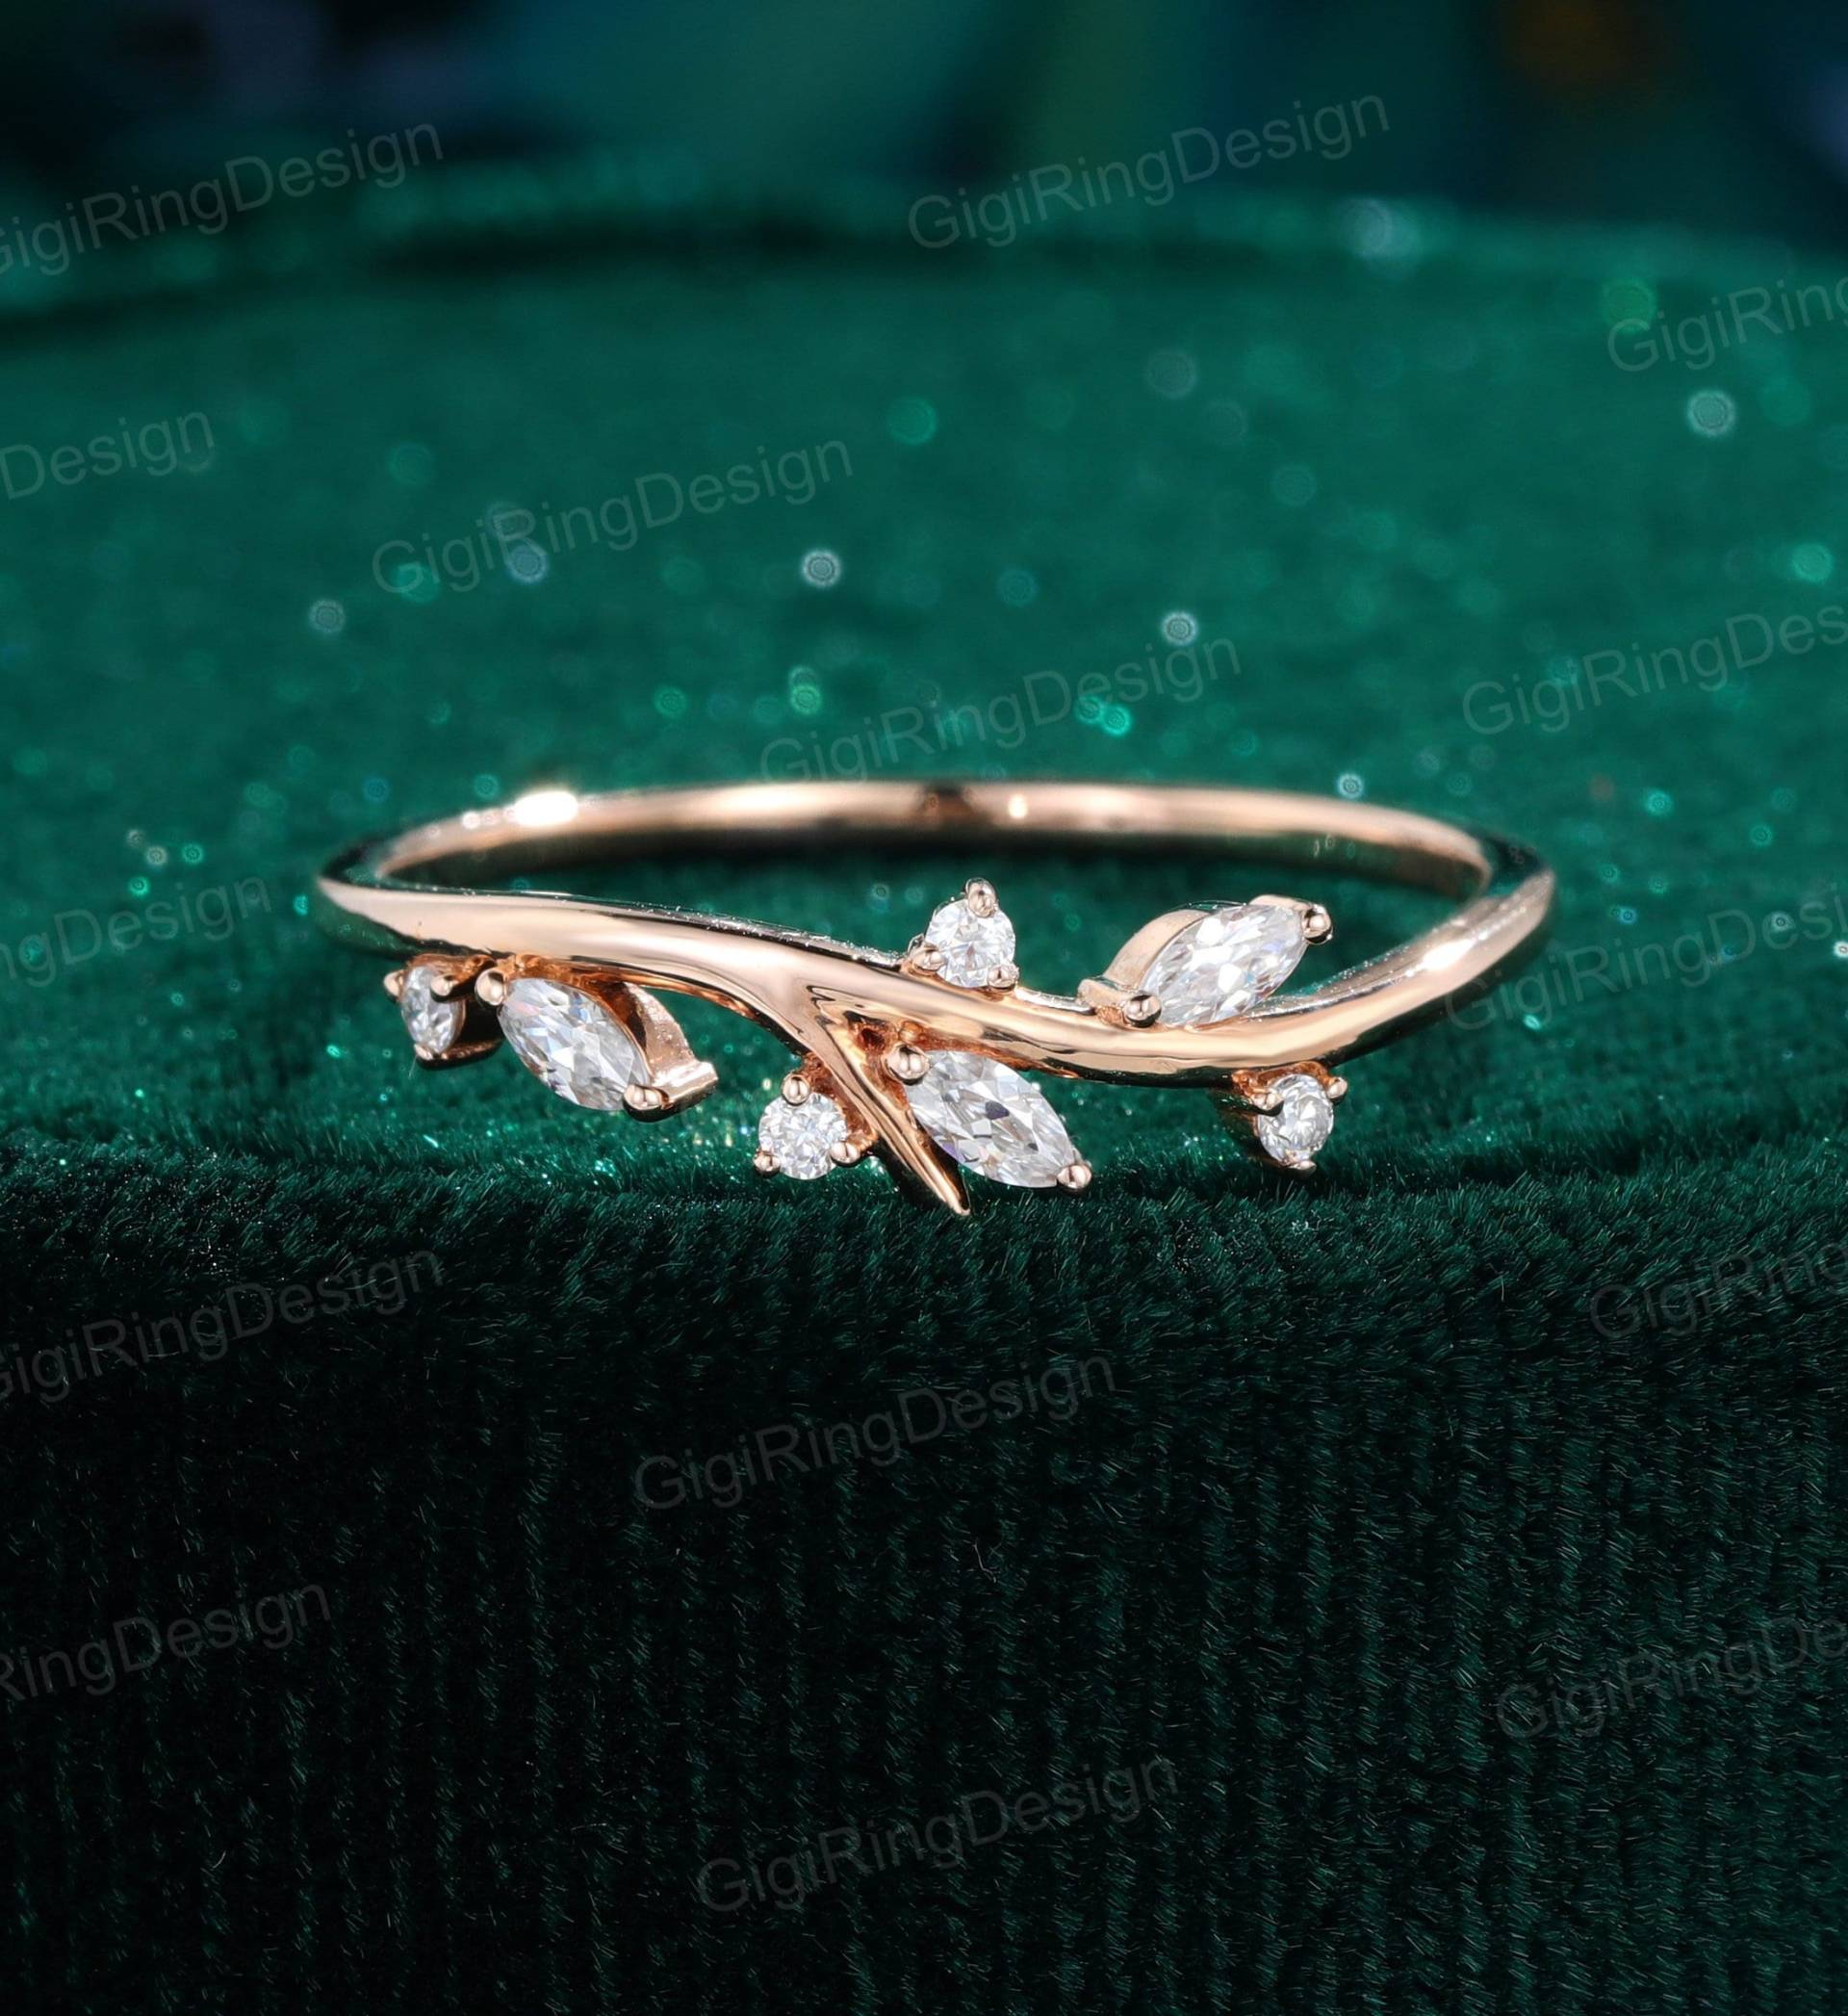 Marquise Moissanit Hochzeitsband Unikat Vintage Rosegold Diamant Ehering Art Deco Zarte Zierliche Stapelring Braut Jahrestag Ring von GigiRingDesign